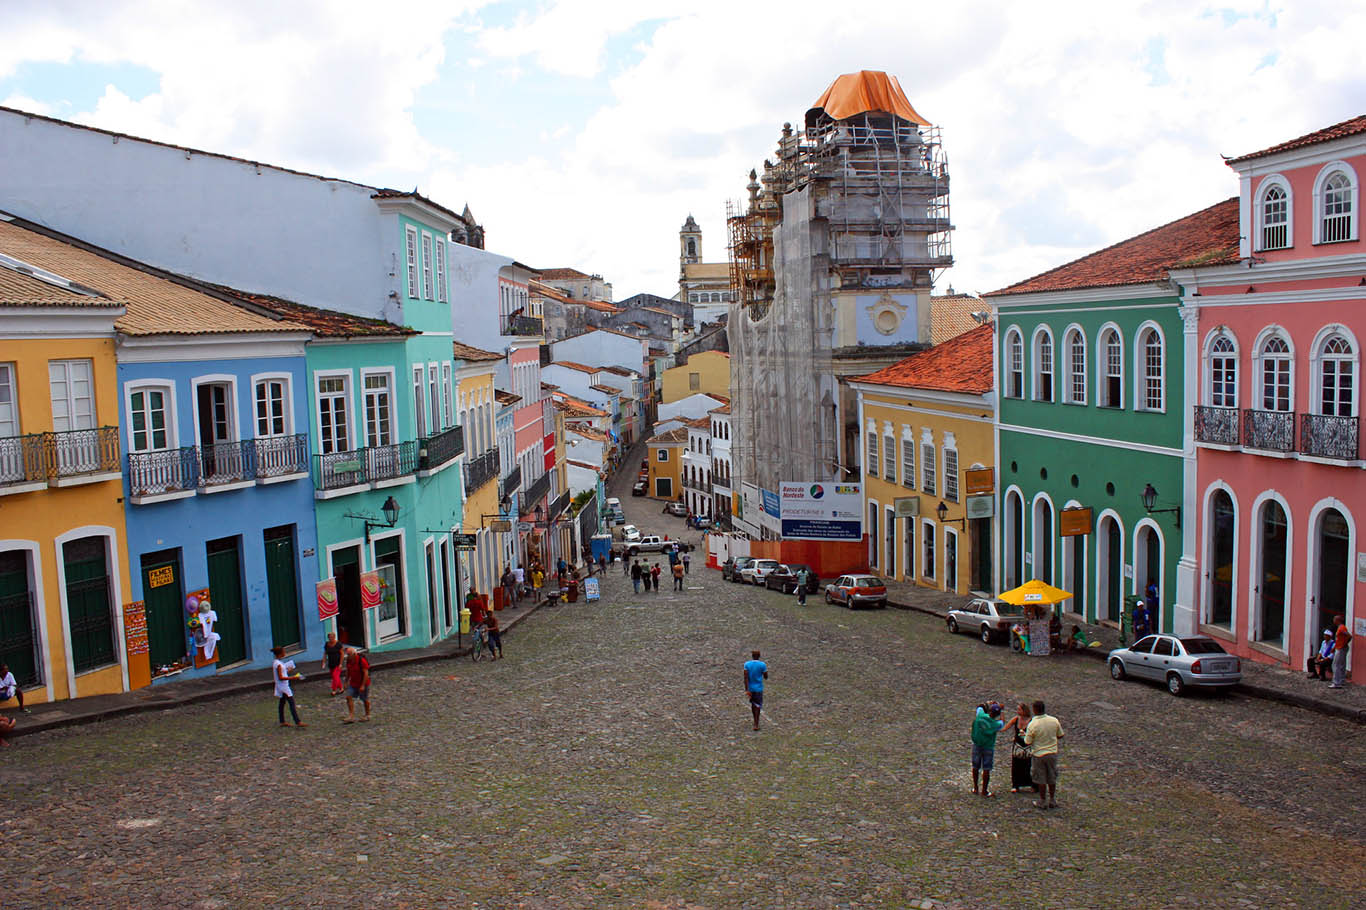 Ruas do Pelourinho, em Salvador, tomadas por comércios instalados em antigas construções apenas com fachadas revitalizadas e, do lado direito, uma igreja em reforma (Foto: Eduardo Pelosi/Flickr)